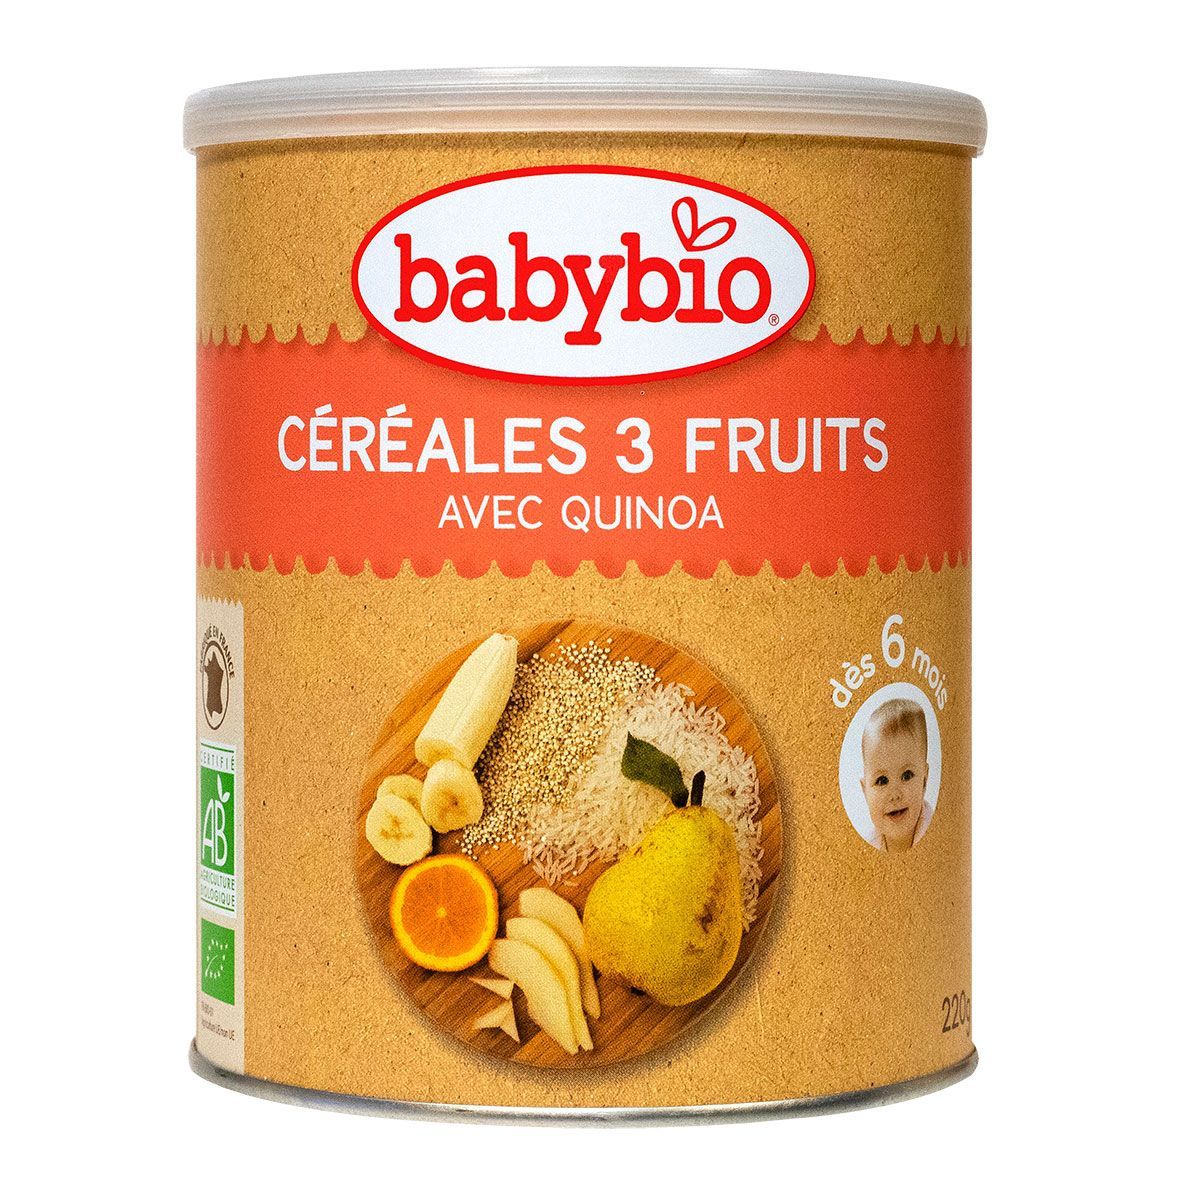 Les céréales 3 fruits & quinoa Babybio sont destinées aux bébés à